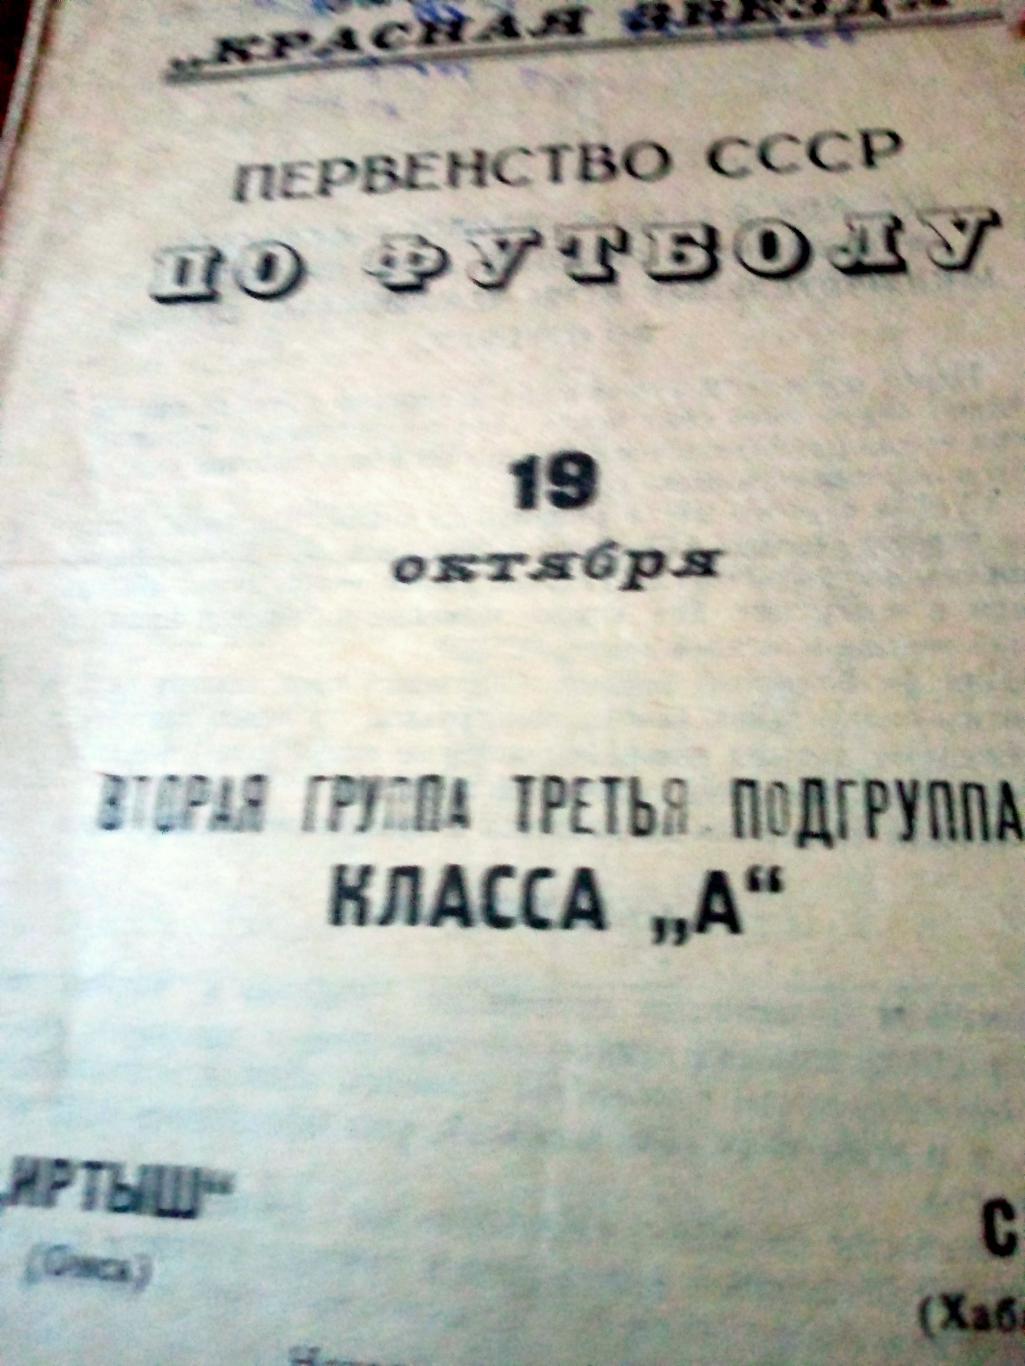 Иртыш Омск - СКА Хабаровск. 19 октября 1967 год